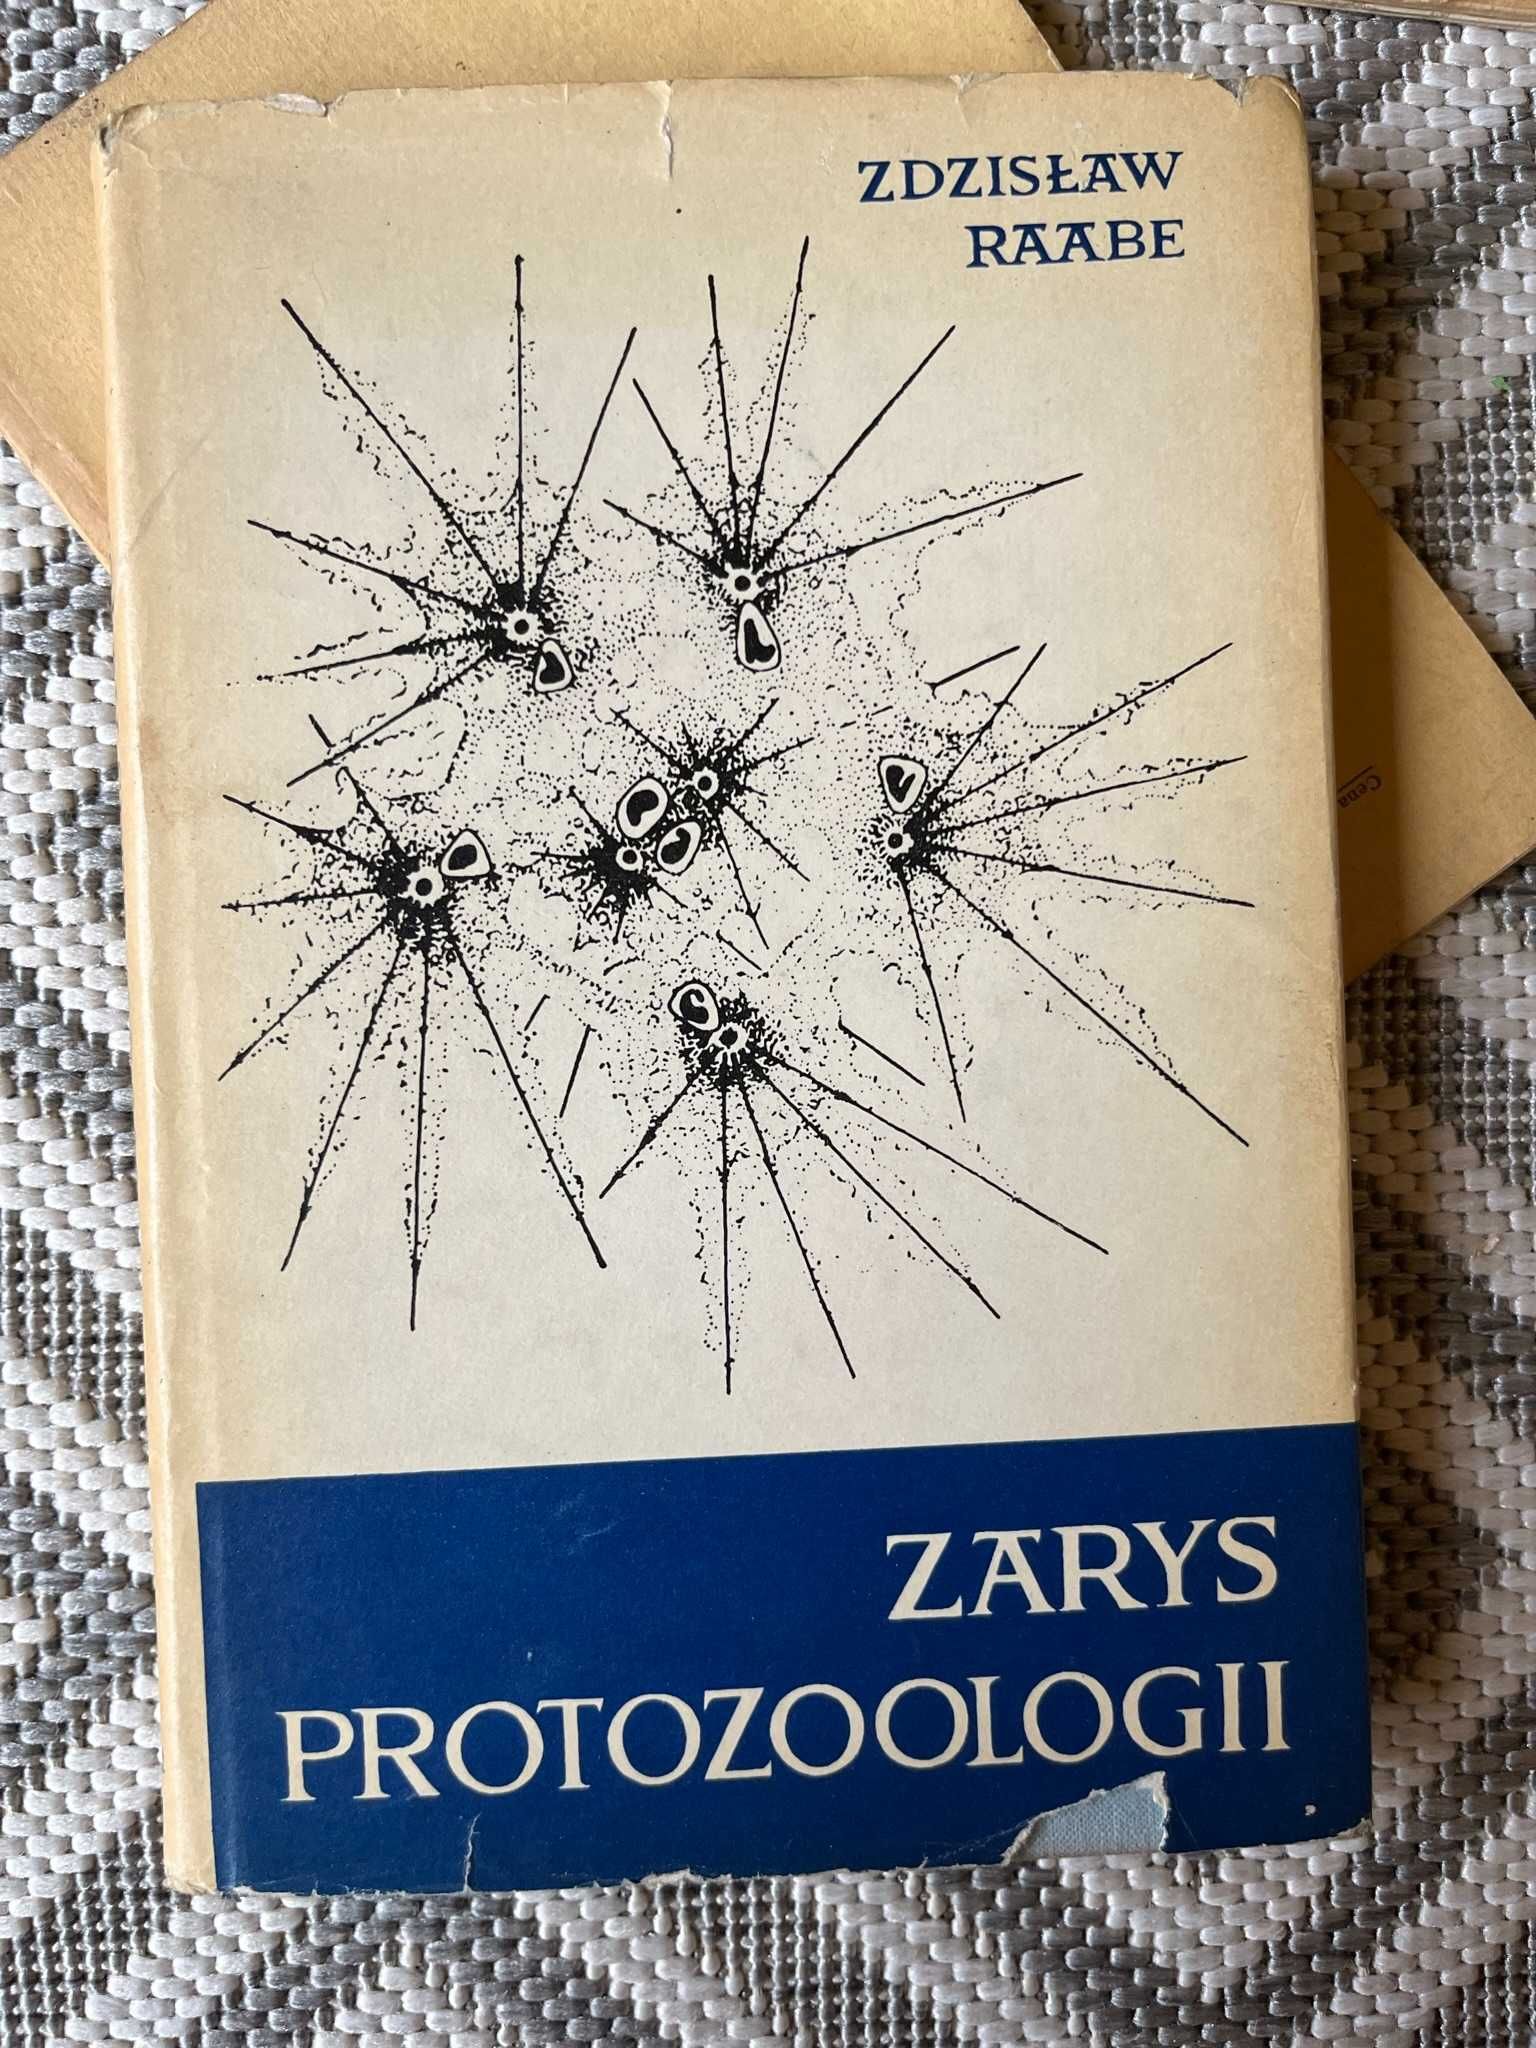 Zdzisław Rabik "Zarys protozoologii" PWN